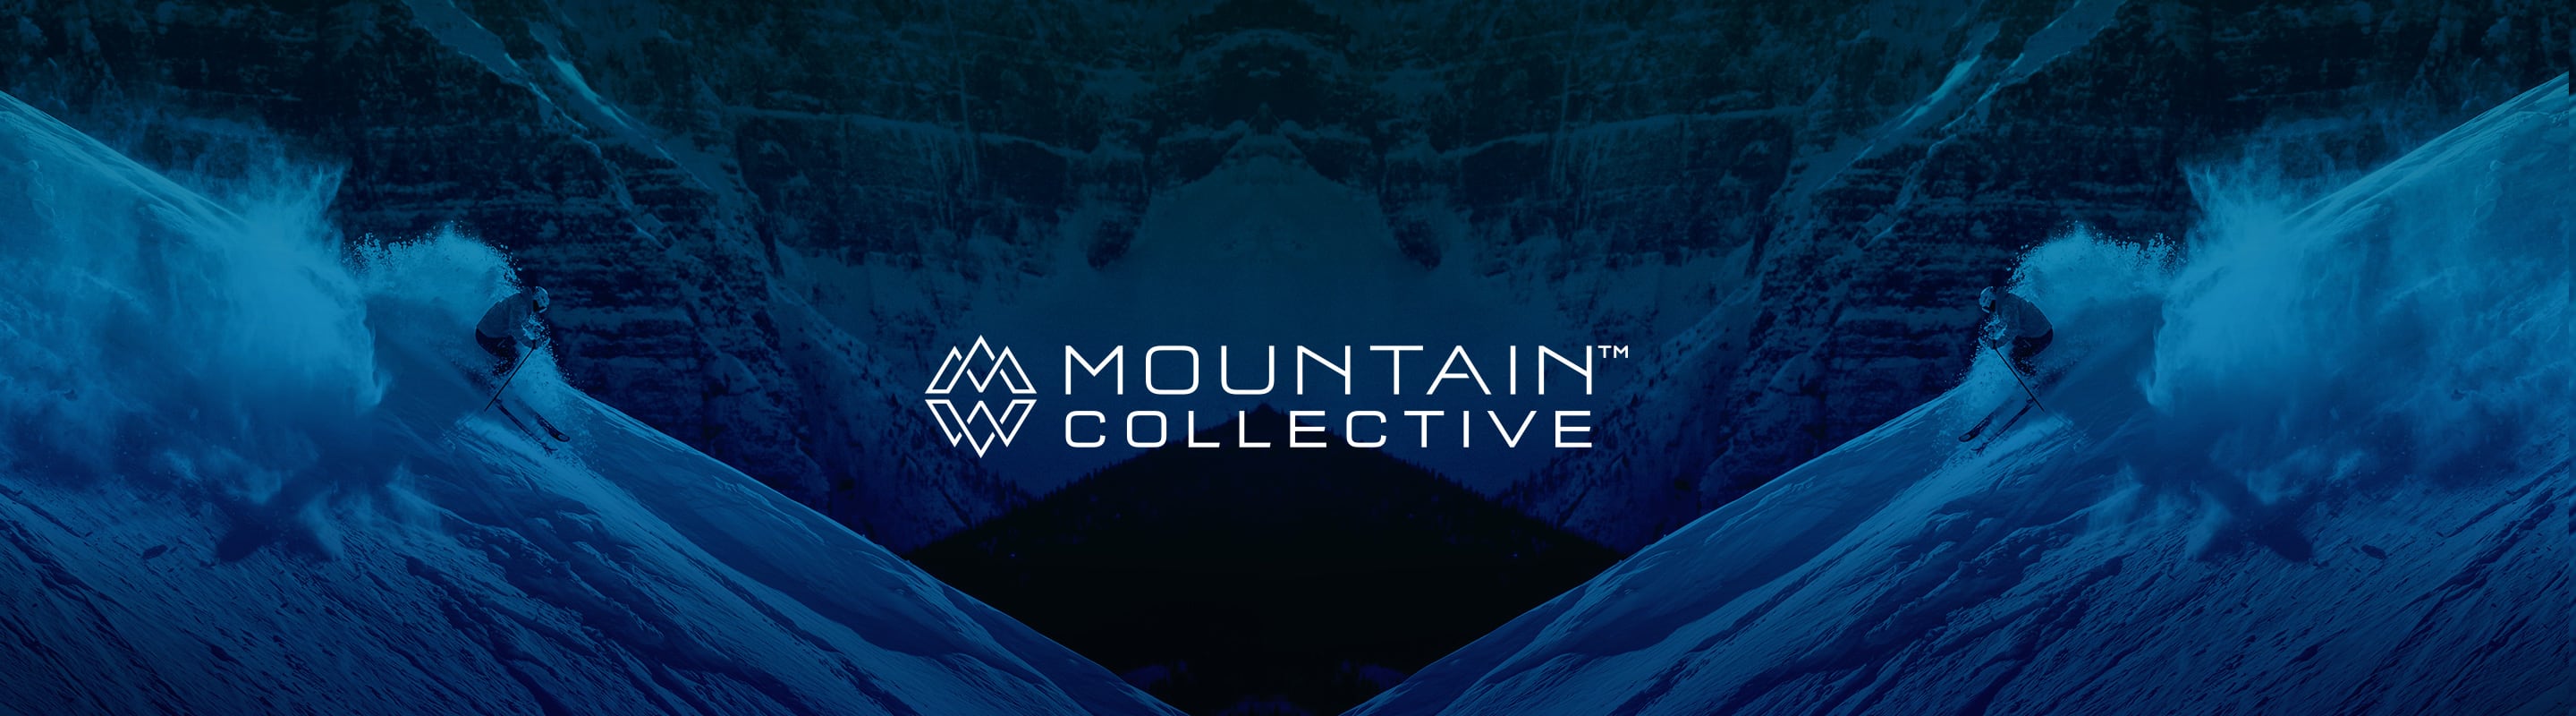 mountain collective ski pass